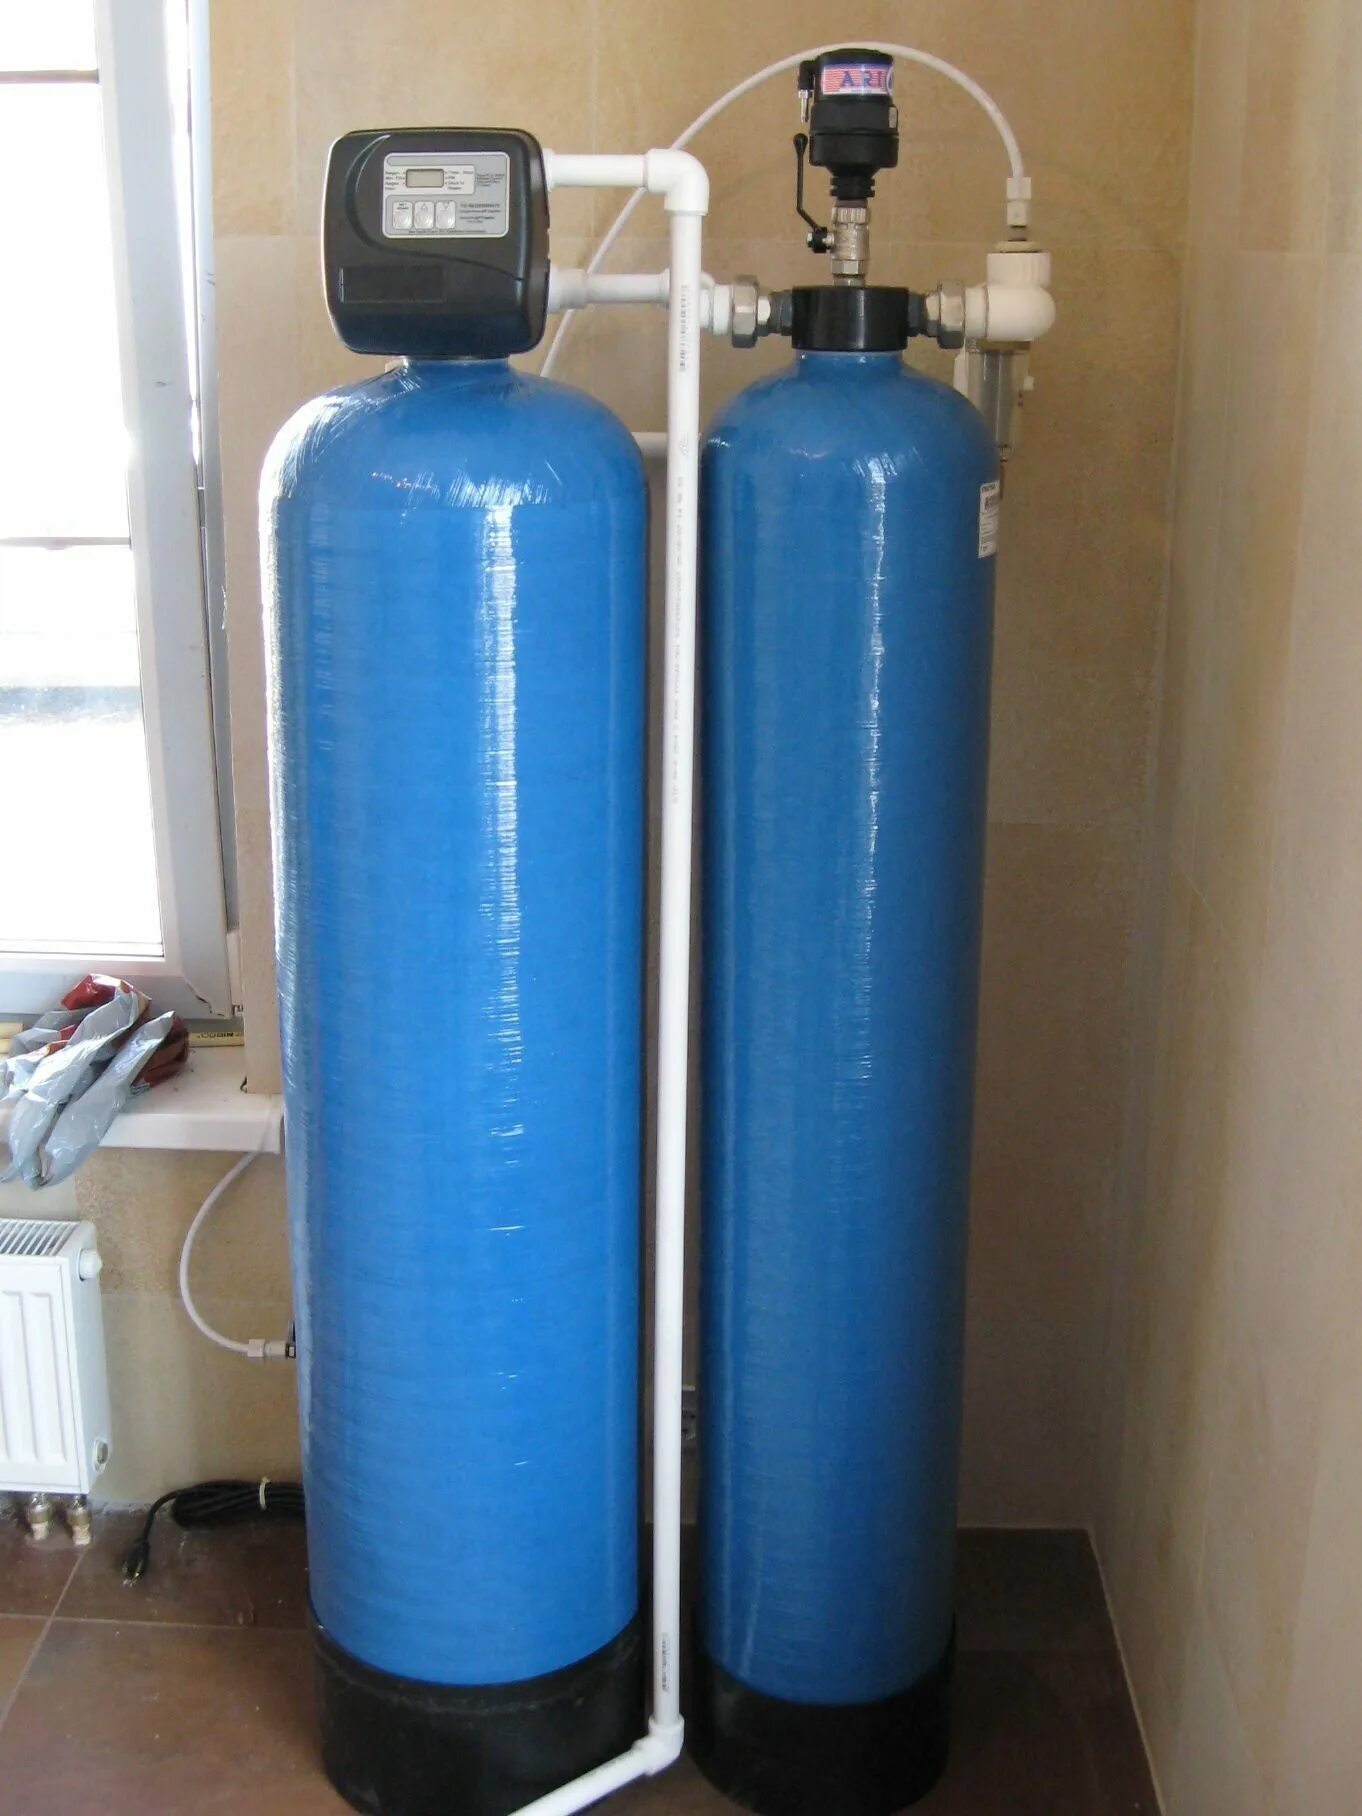 Система очистки обезжелезивания воды. Колонна 1054 обезжелезивания. Аэрационная колонна для очистки воды 1054. Система обезжелезивания воды (очистка воды от железа).